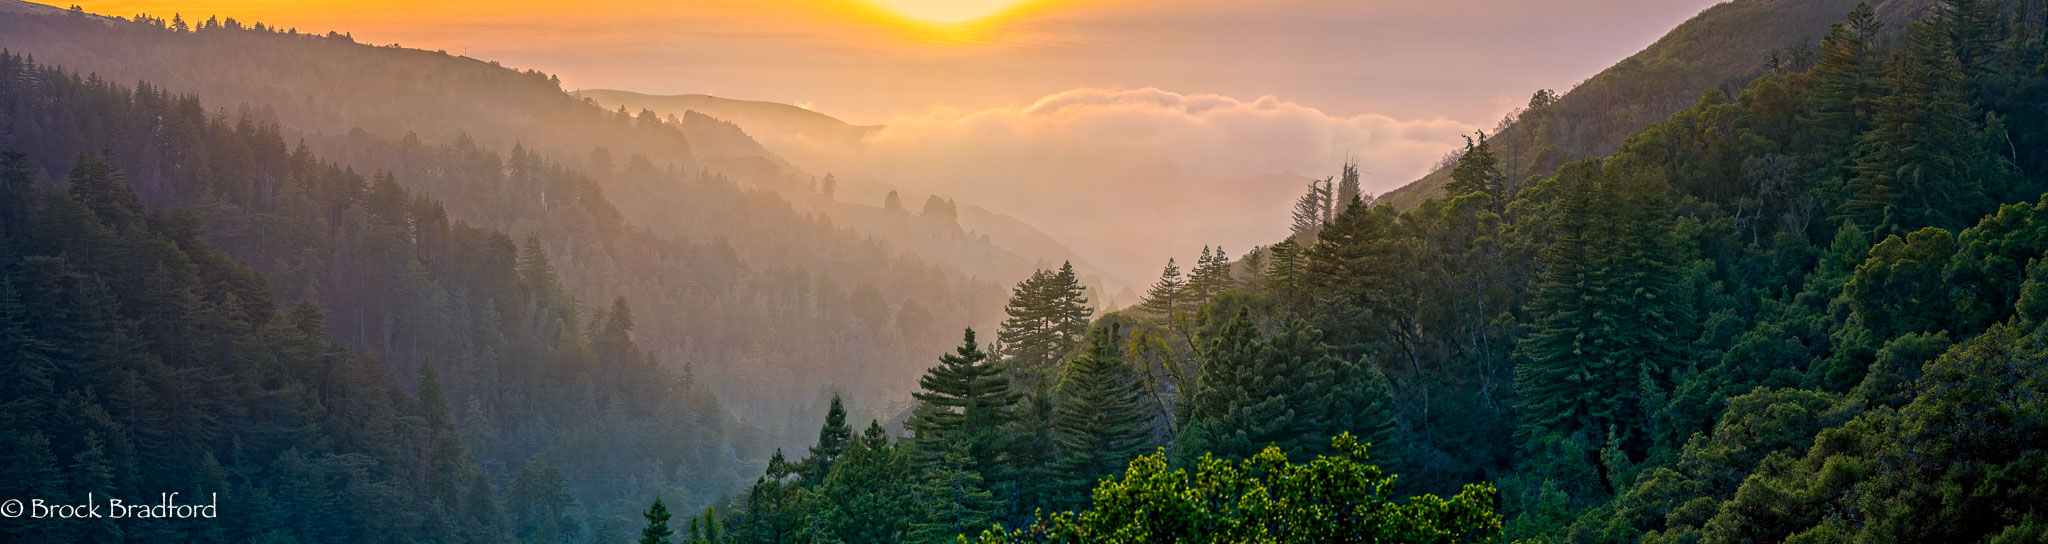 Redwood-canyon-fog-wave-Pano.jpg